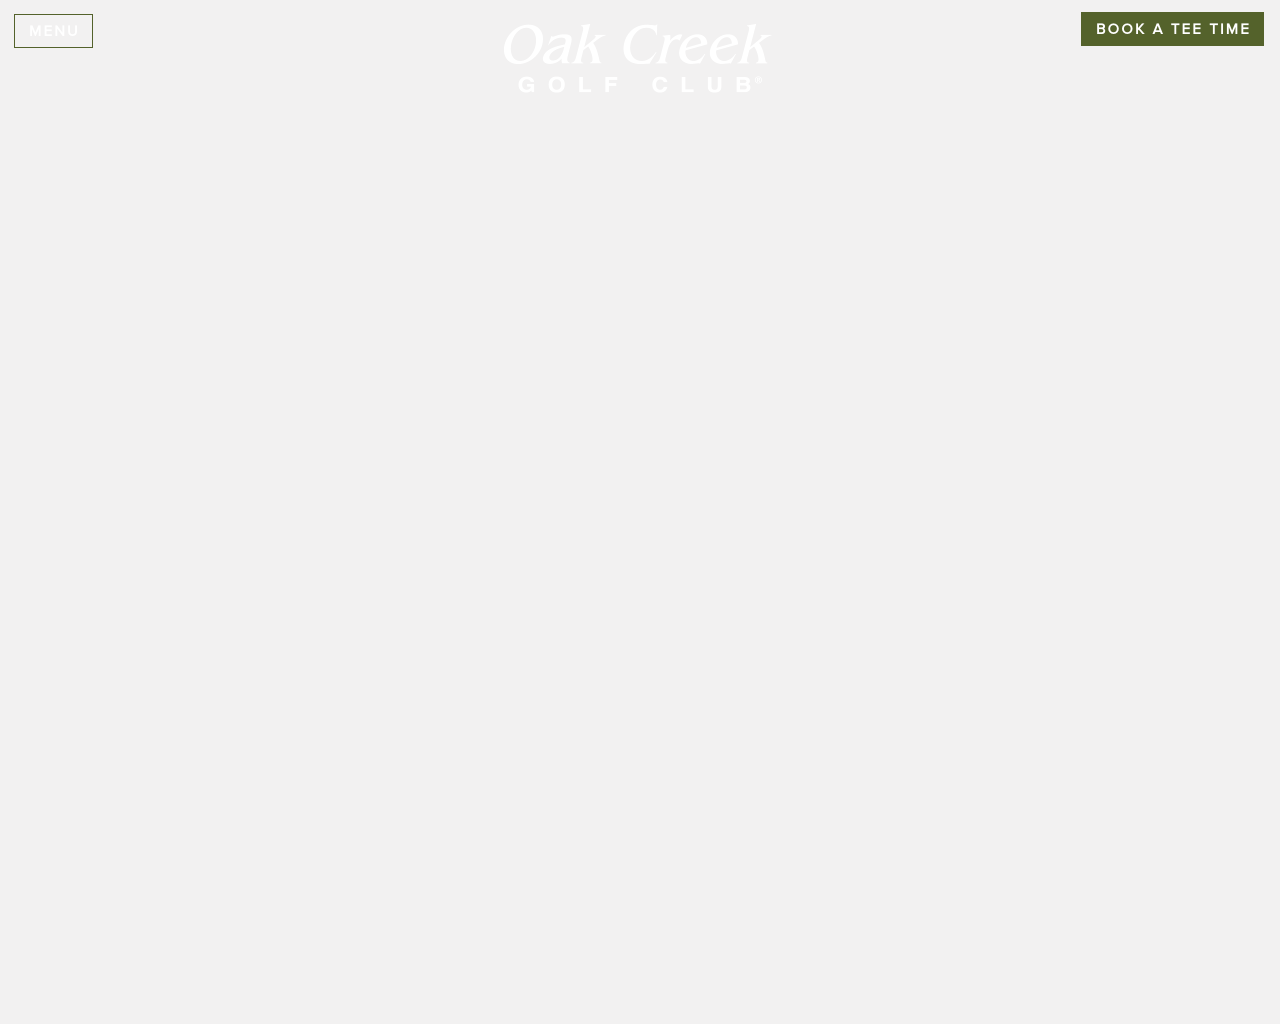 oakcreekgolfclub.com